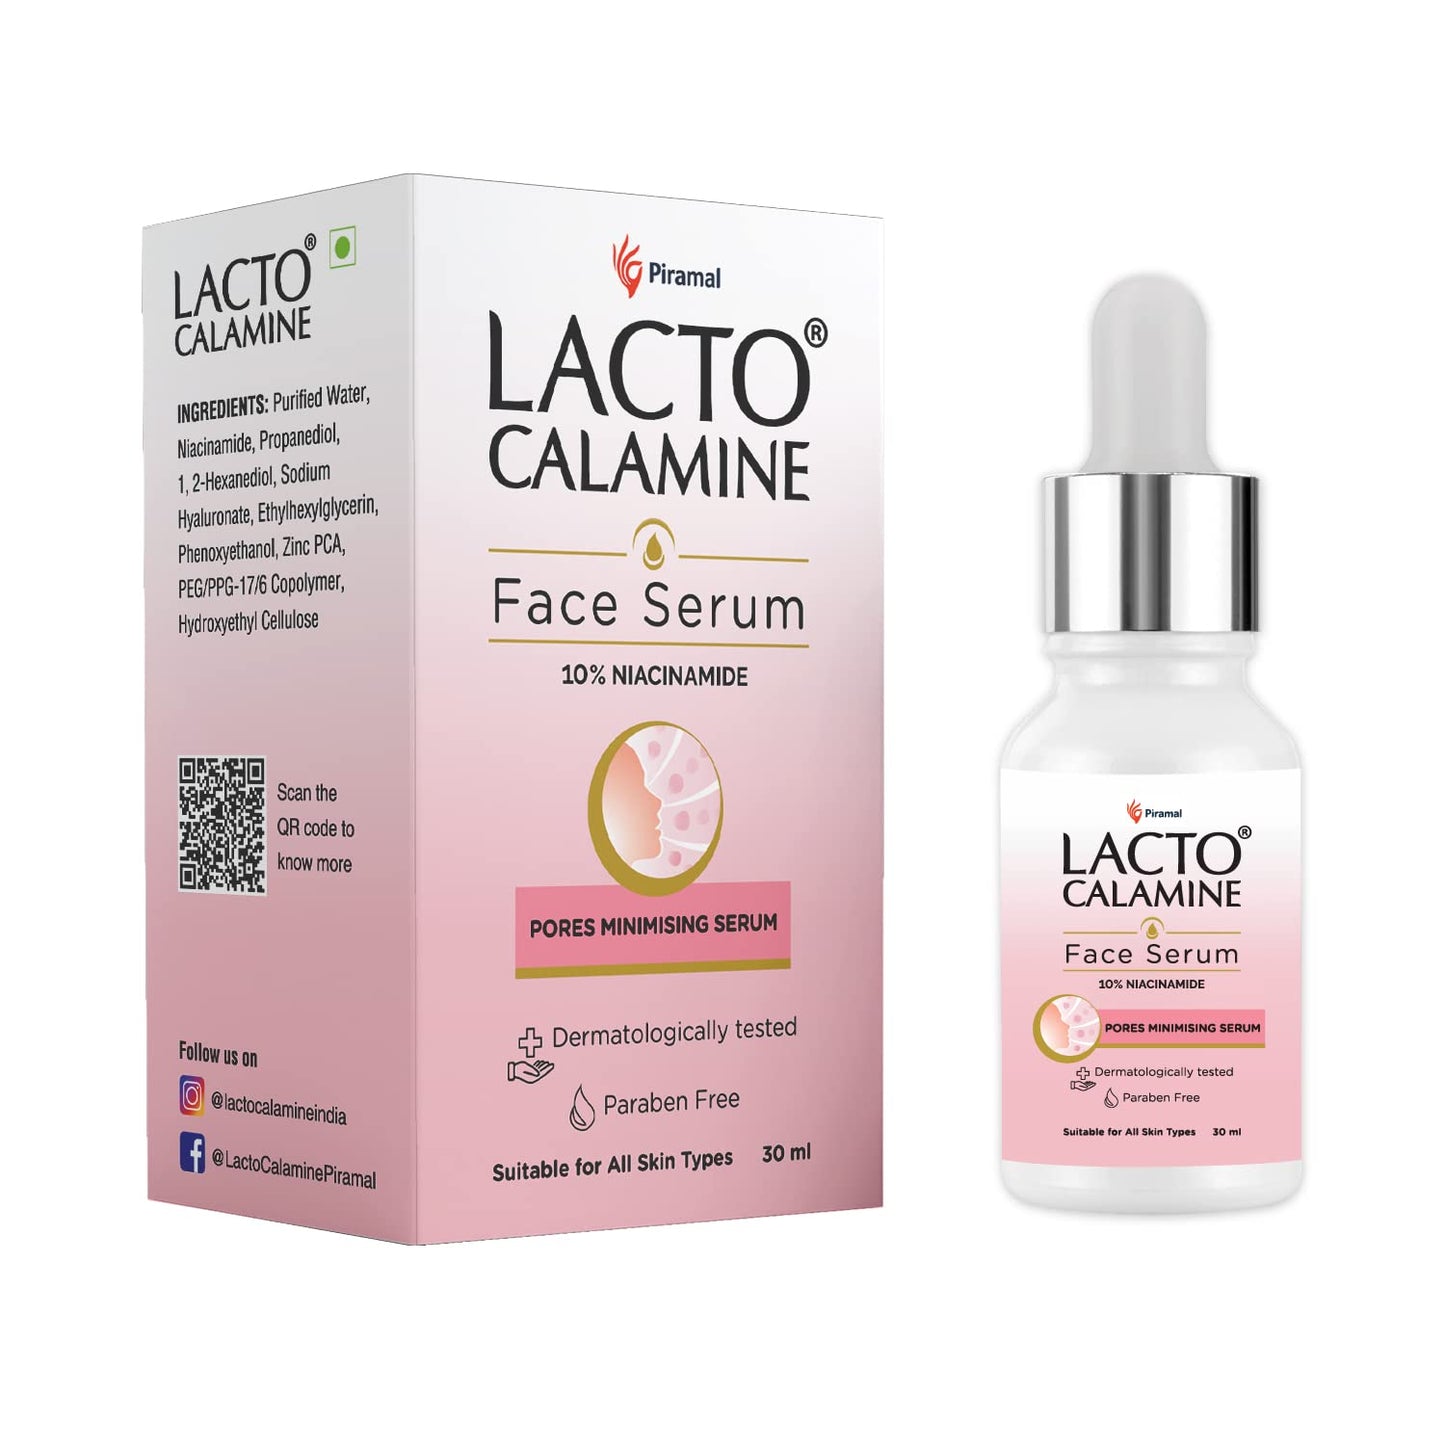 Lacto Calamine 10% Niacinamide face serum for minimising pores